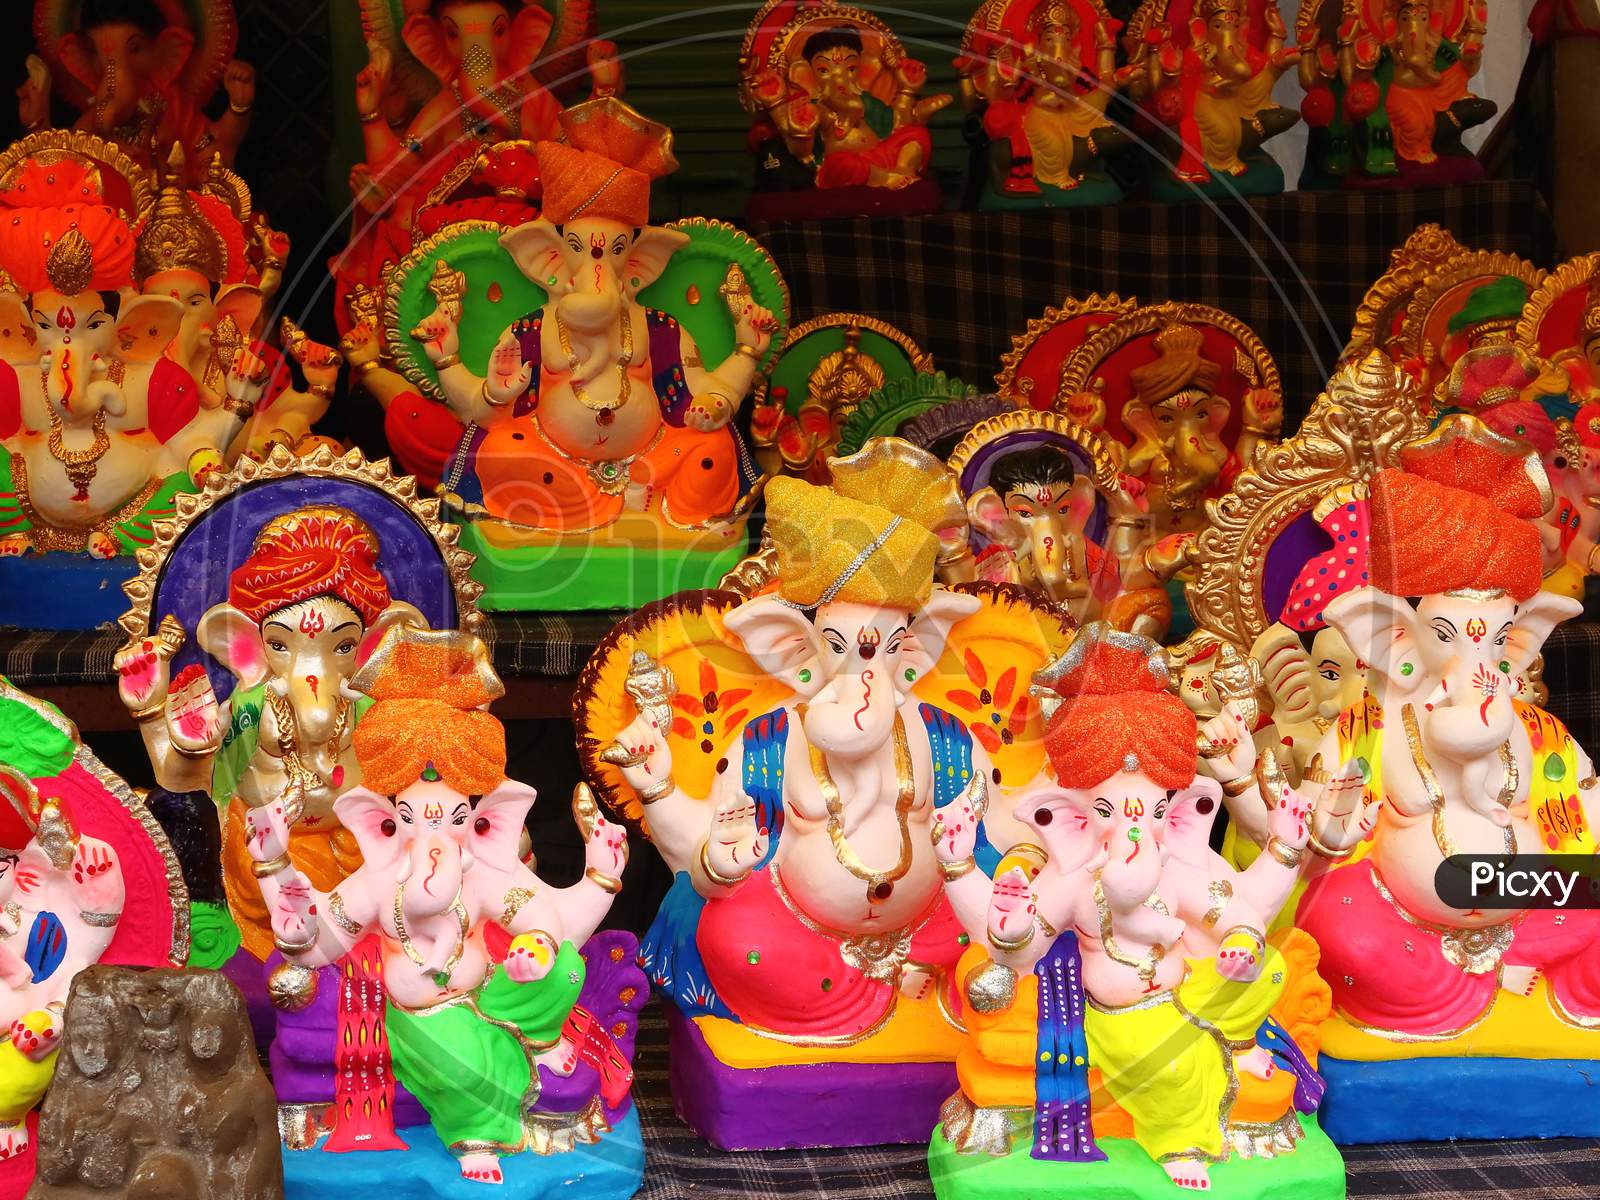 Lord Ganesha idol on sale at market during Ganesha Chaturthi festival.